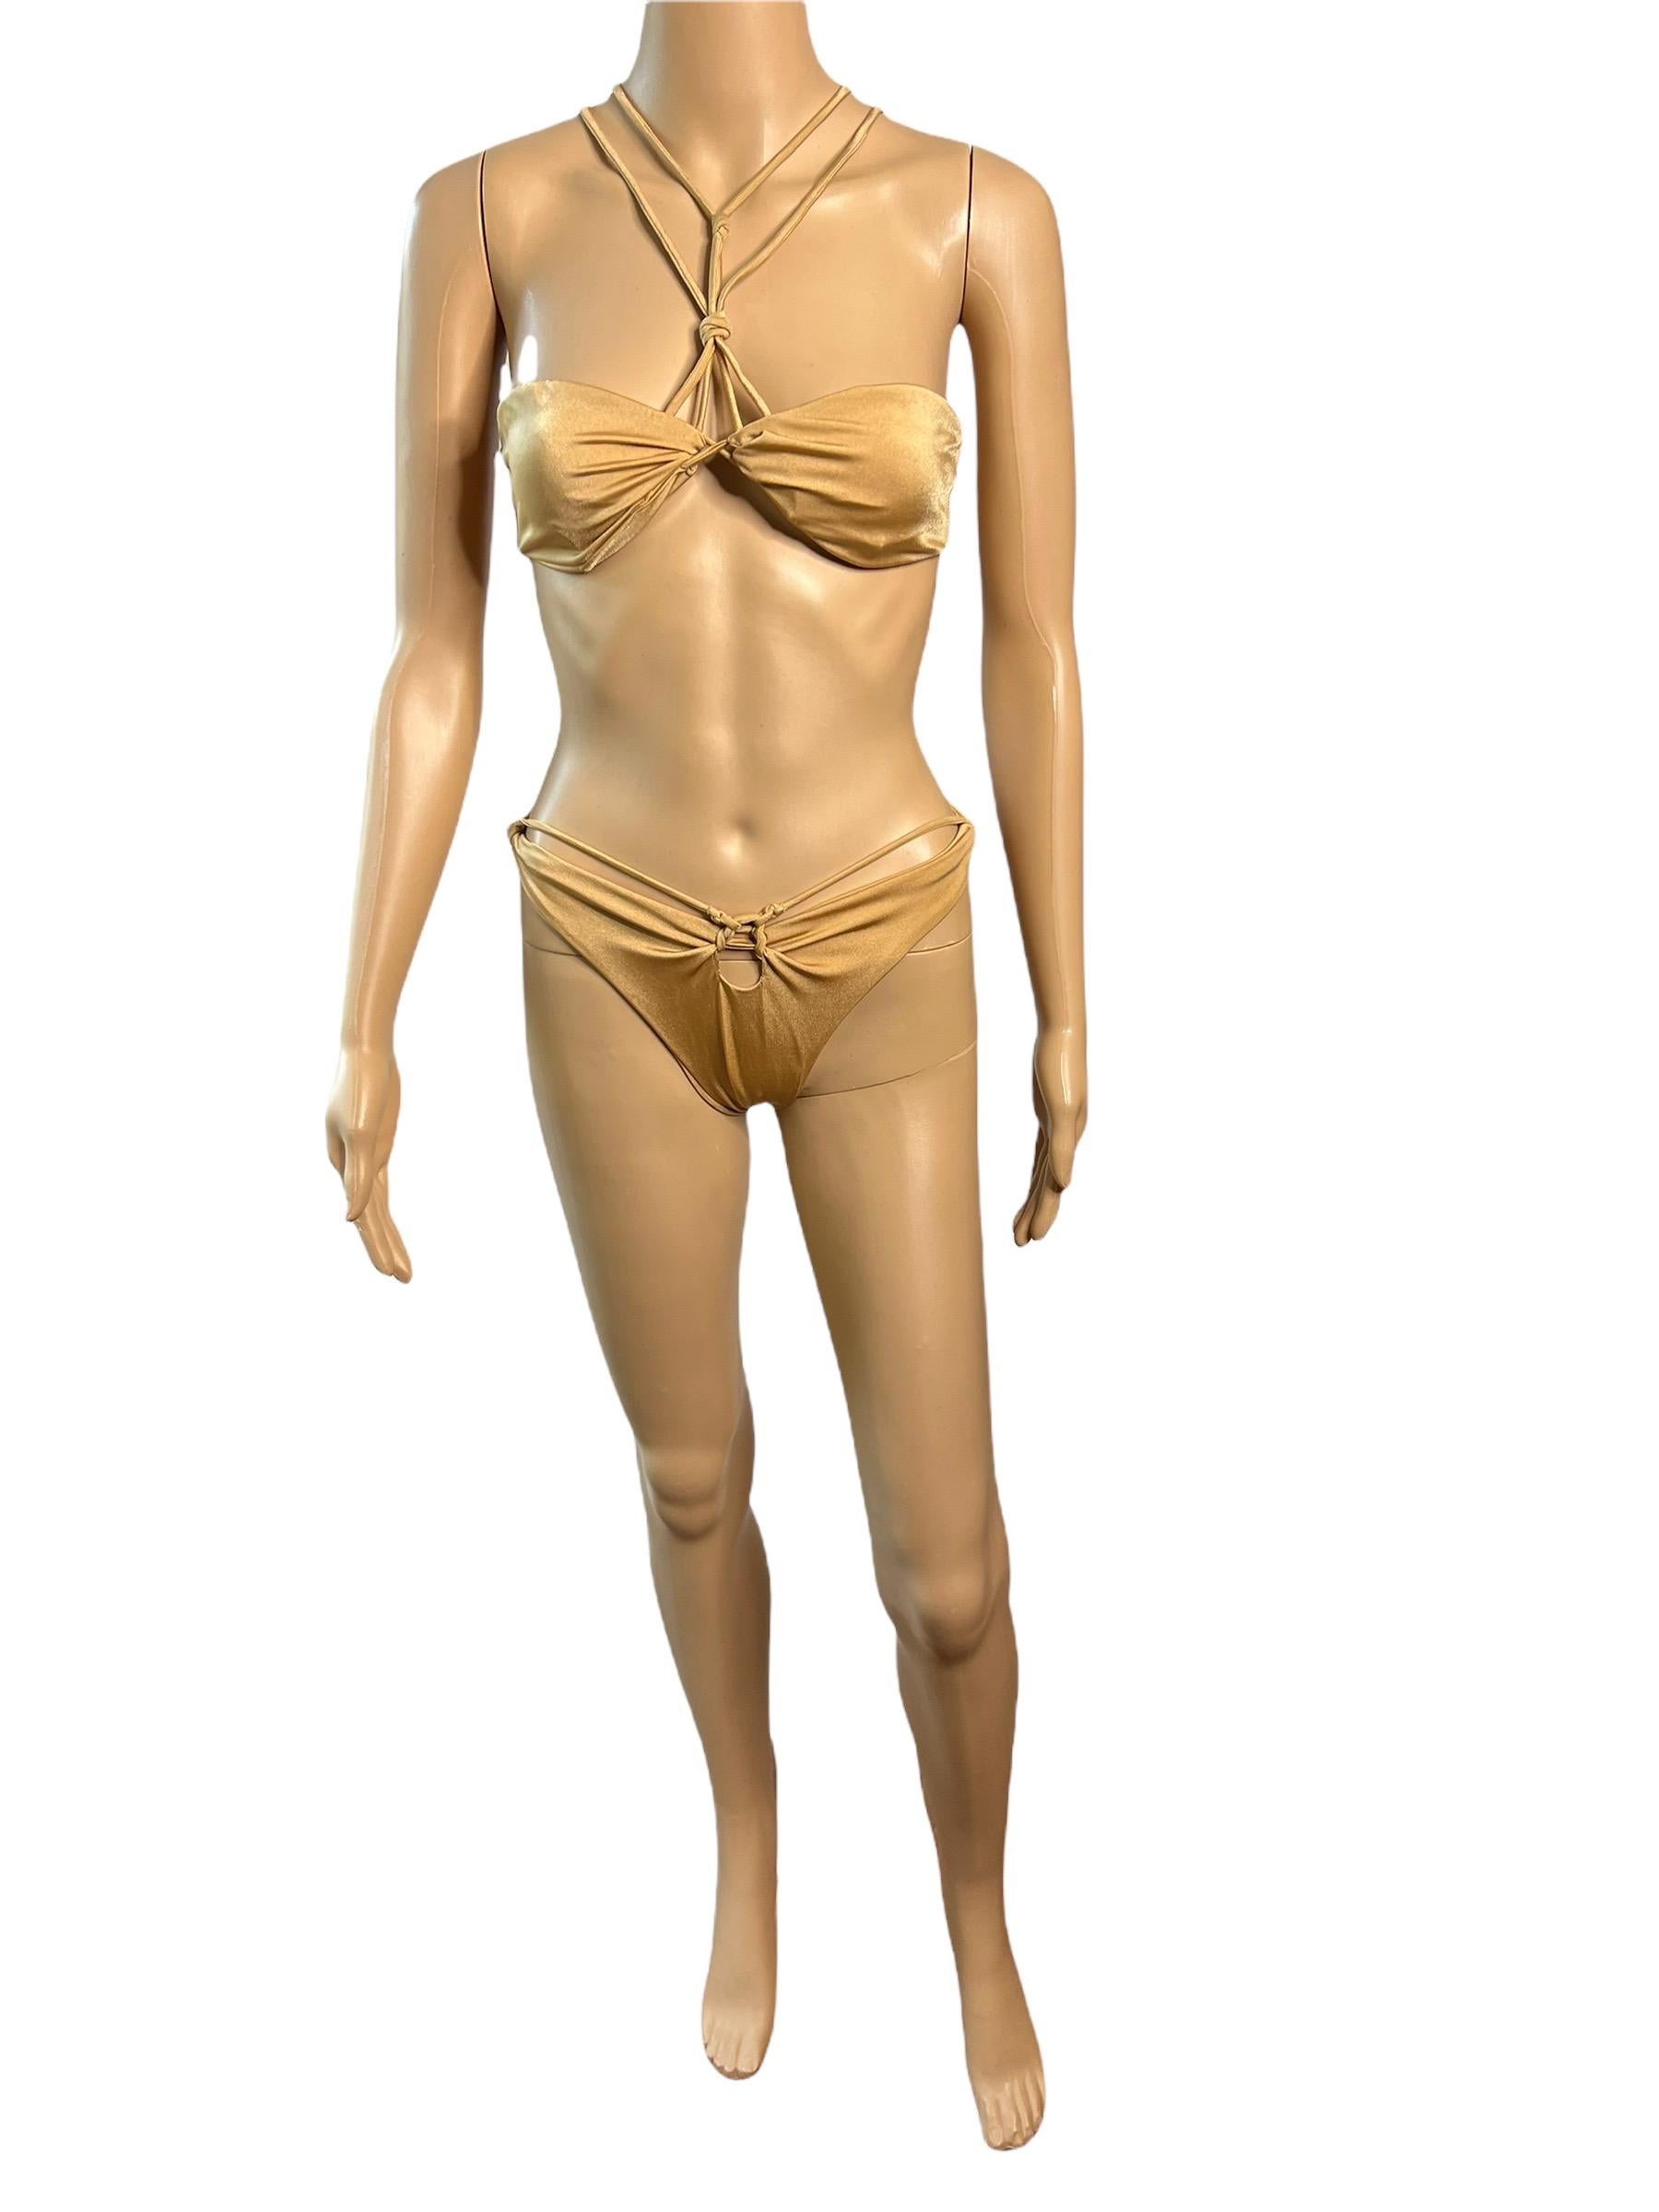 Brown Tom Ford for Gucci c.2004 Bondage Strappy Gold 2 Piece Bikini Swimsuit Swimwear